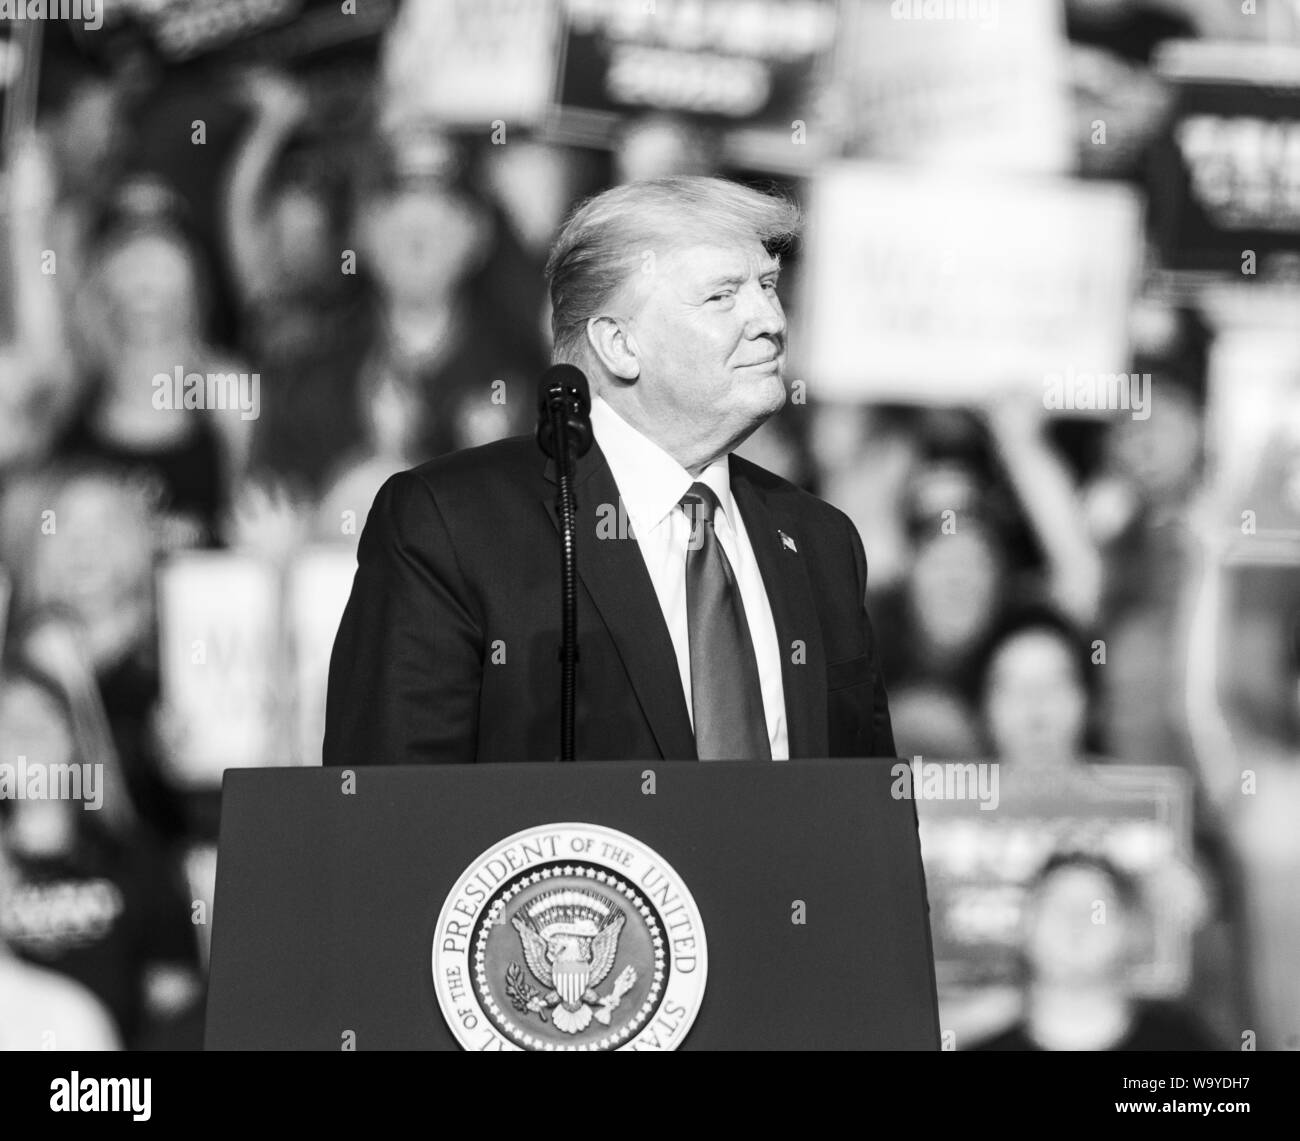 Manchester, NH - 15 août 2019 : Le président Donald Trump parle lors de la campagne de MAGA rassemblement à Southern New Hampshire University Arena Banque D'Images